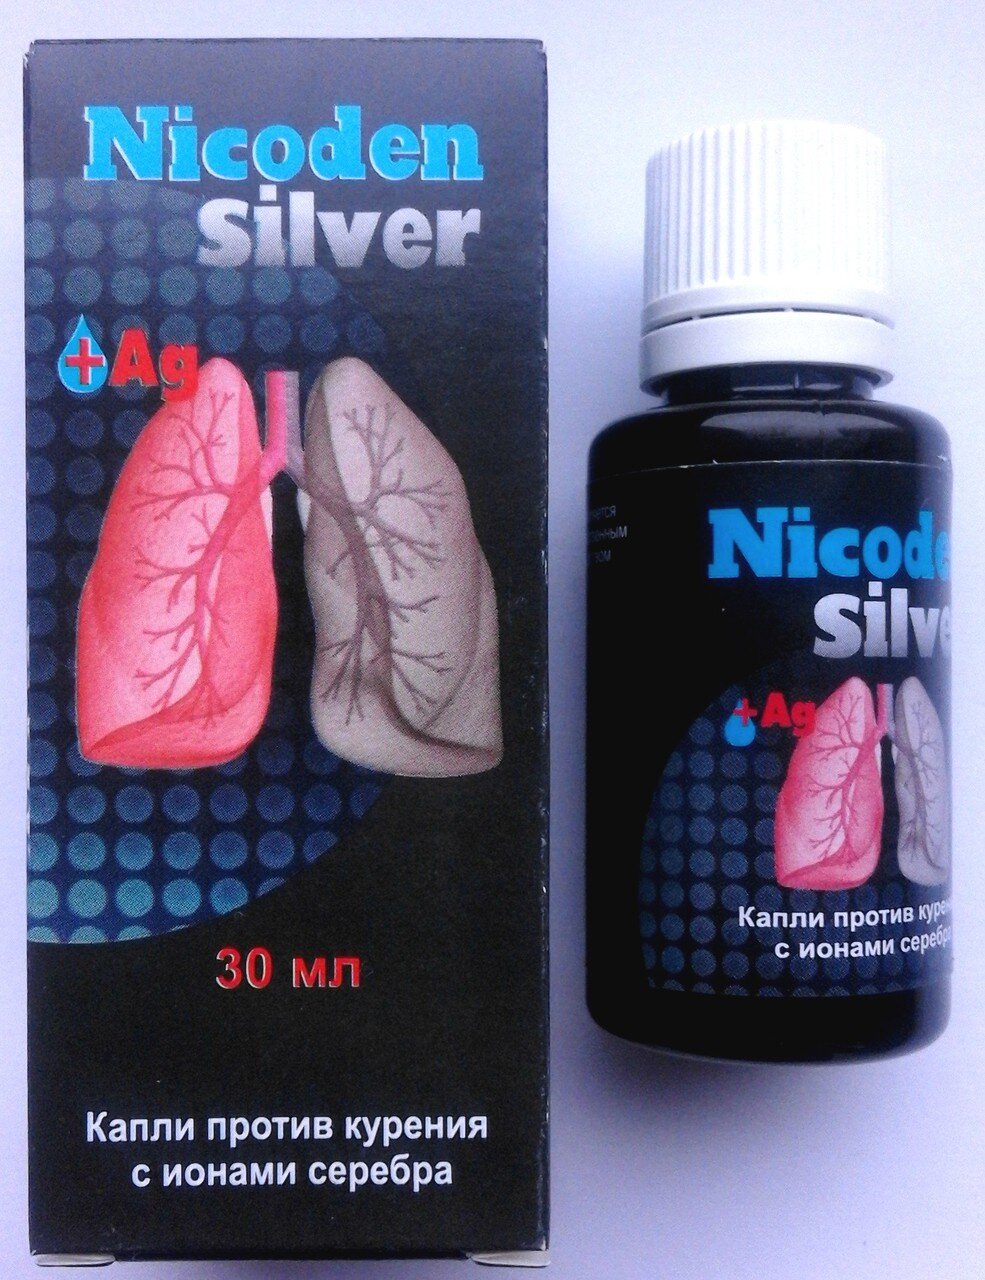 Nicoden Silver